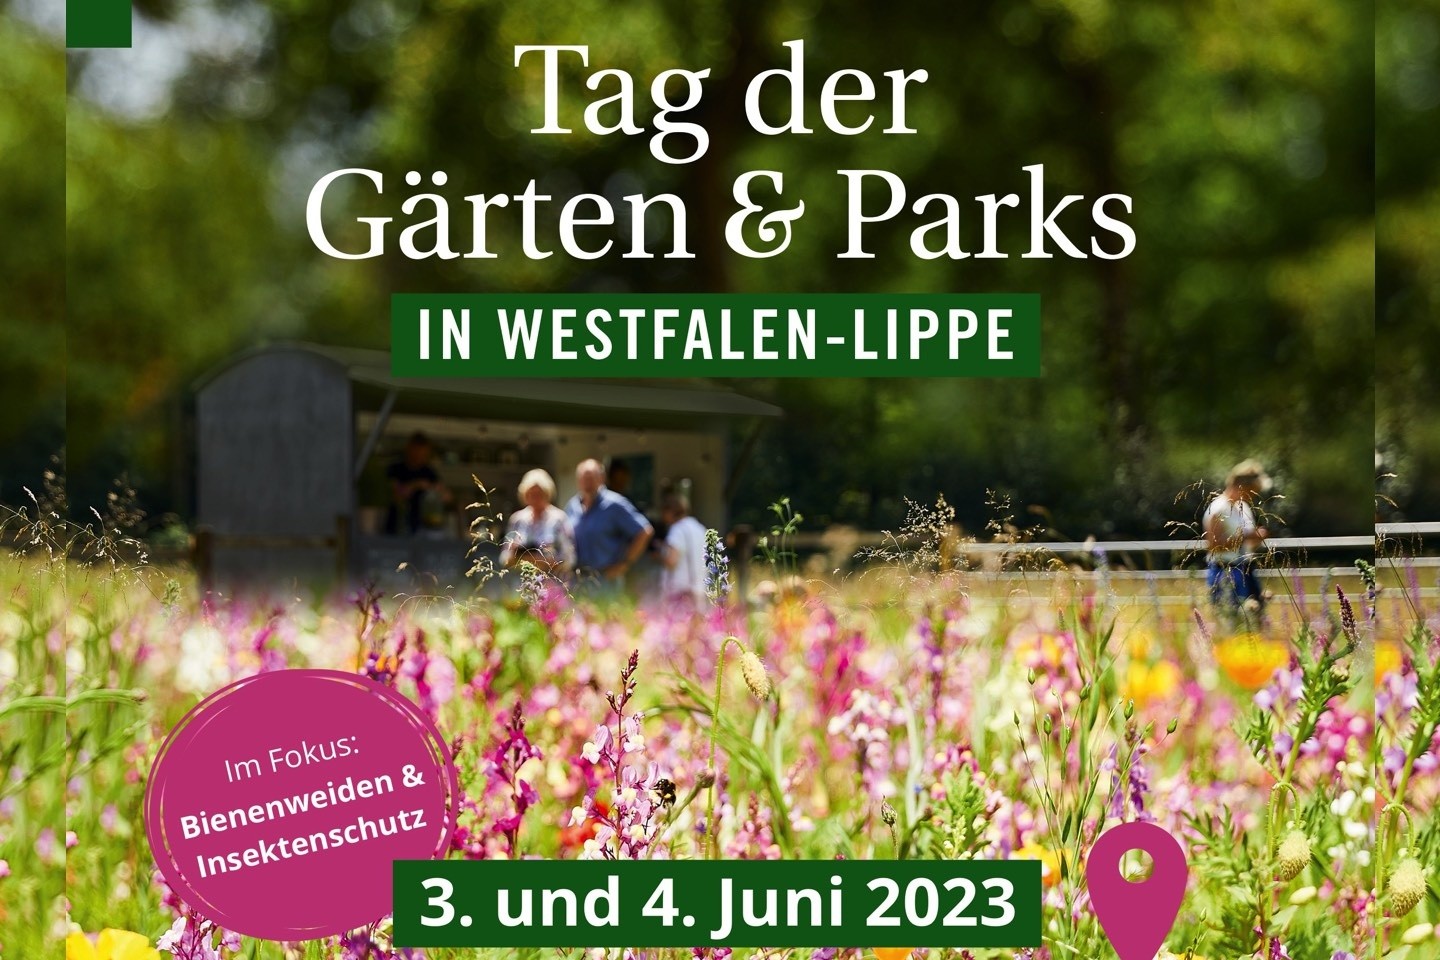 Tag der Gärten,LWL,Warendorf,Park,Bienenweiden,